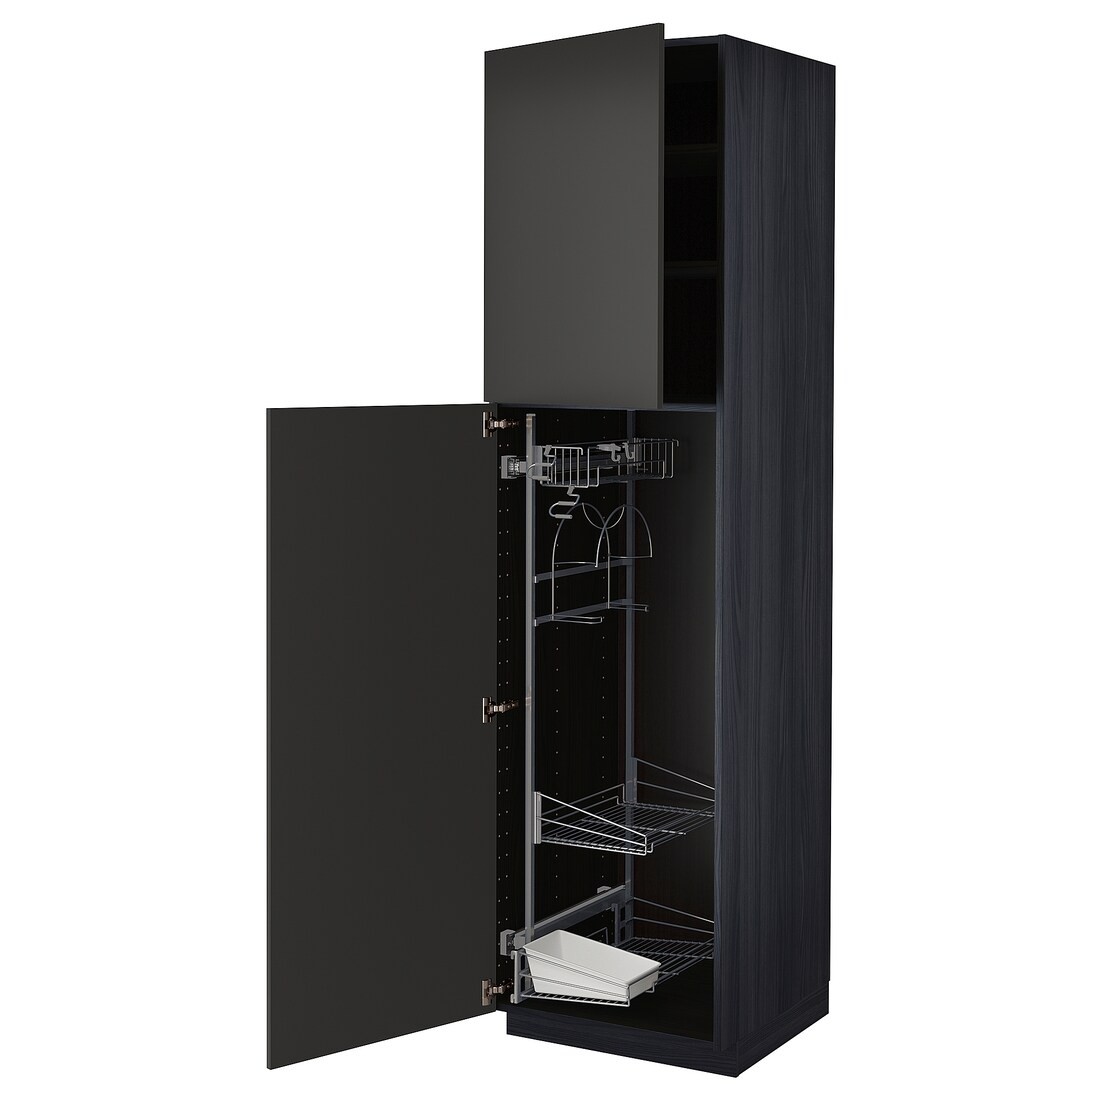 METOD МЕТОД Высокий шкаф с отделением для аксессуаров для уборки, черный / Nickebo матовый антрацит, 60x60x220 см